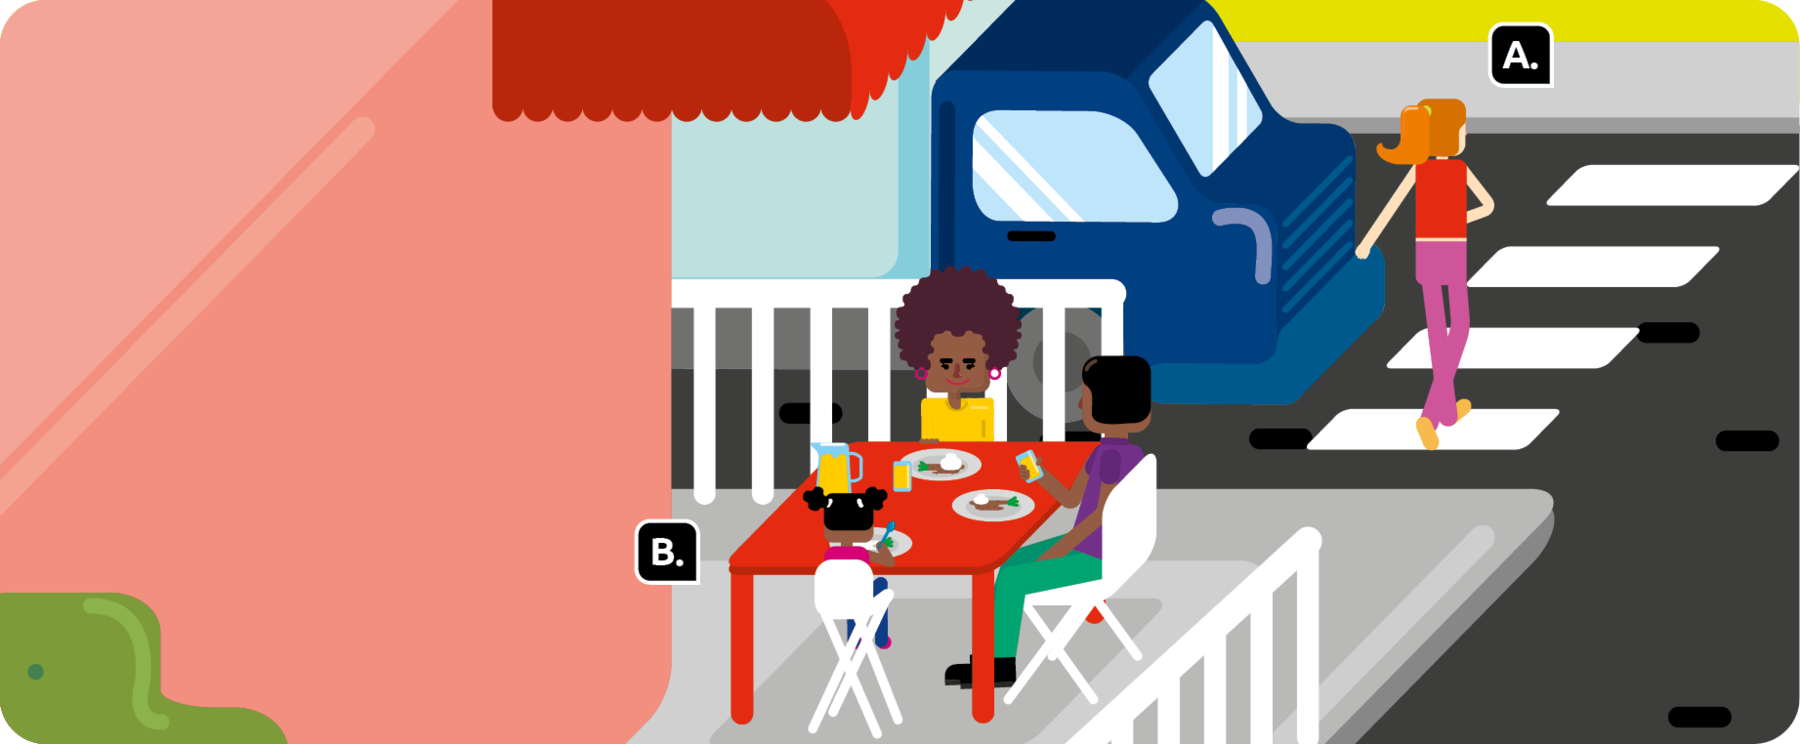 Ilustração. Uma mulher atravessando uma rua na faixa para pedestres, indicada com a letra A. Há um caminhão parado ao lado dela, e na calçada atrás, uma família sentada em uma mesa, comendo, indicada pela letra B.